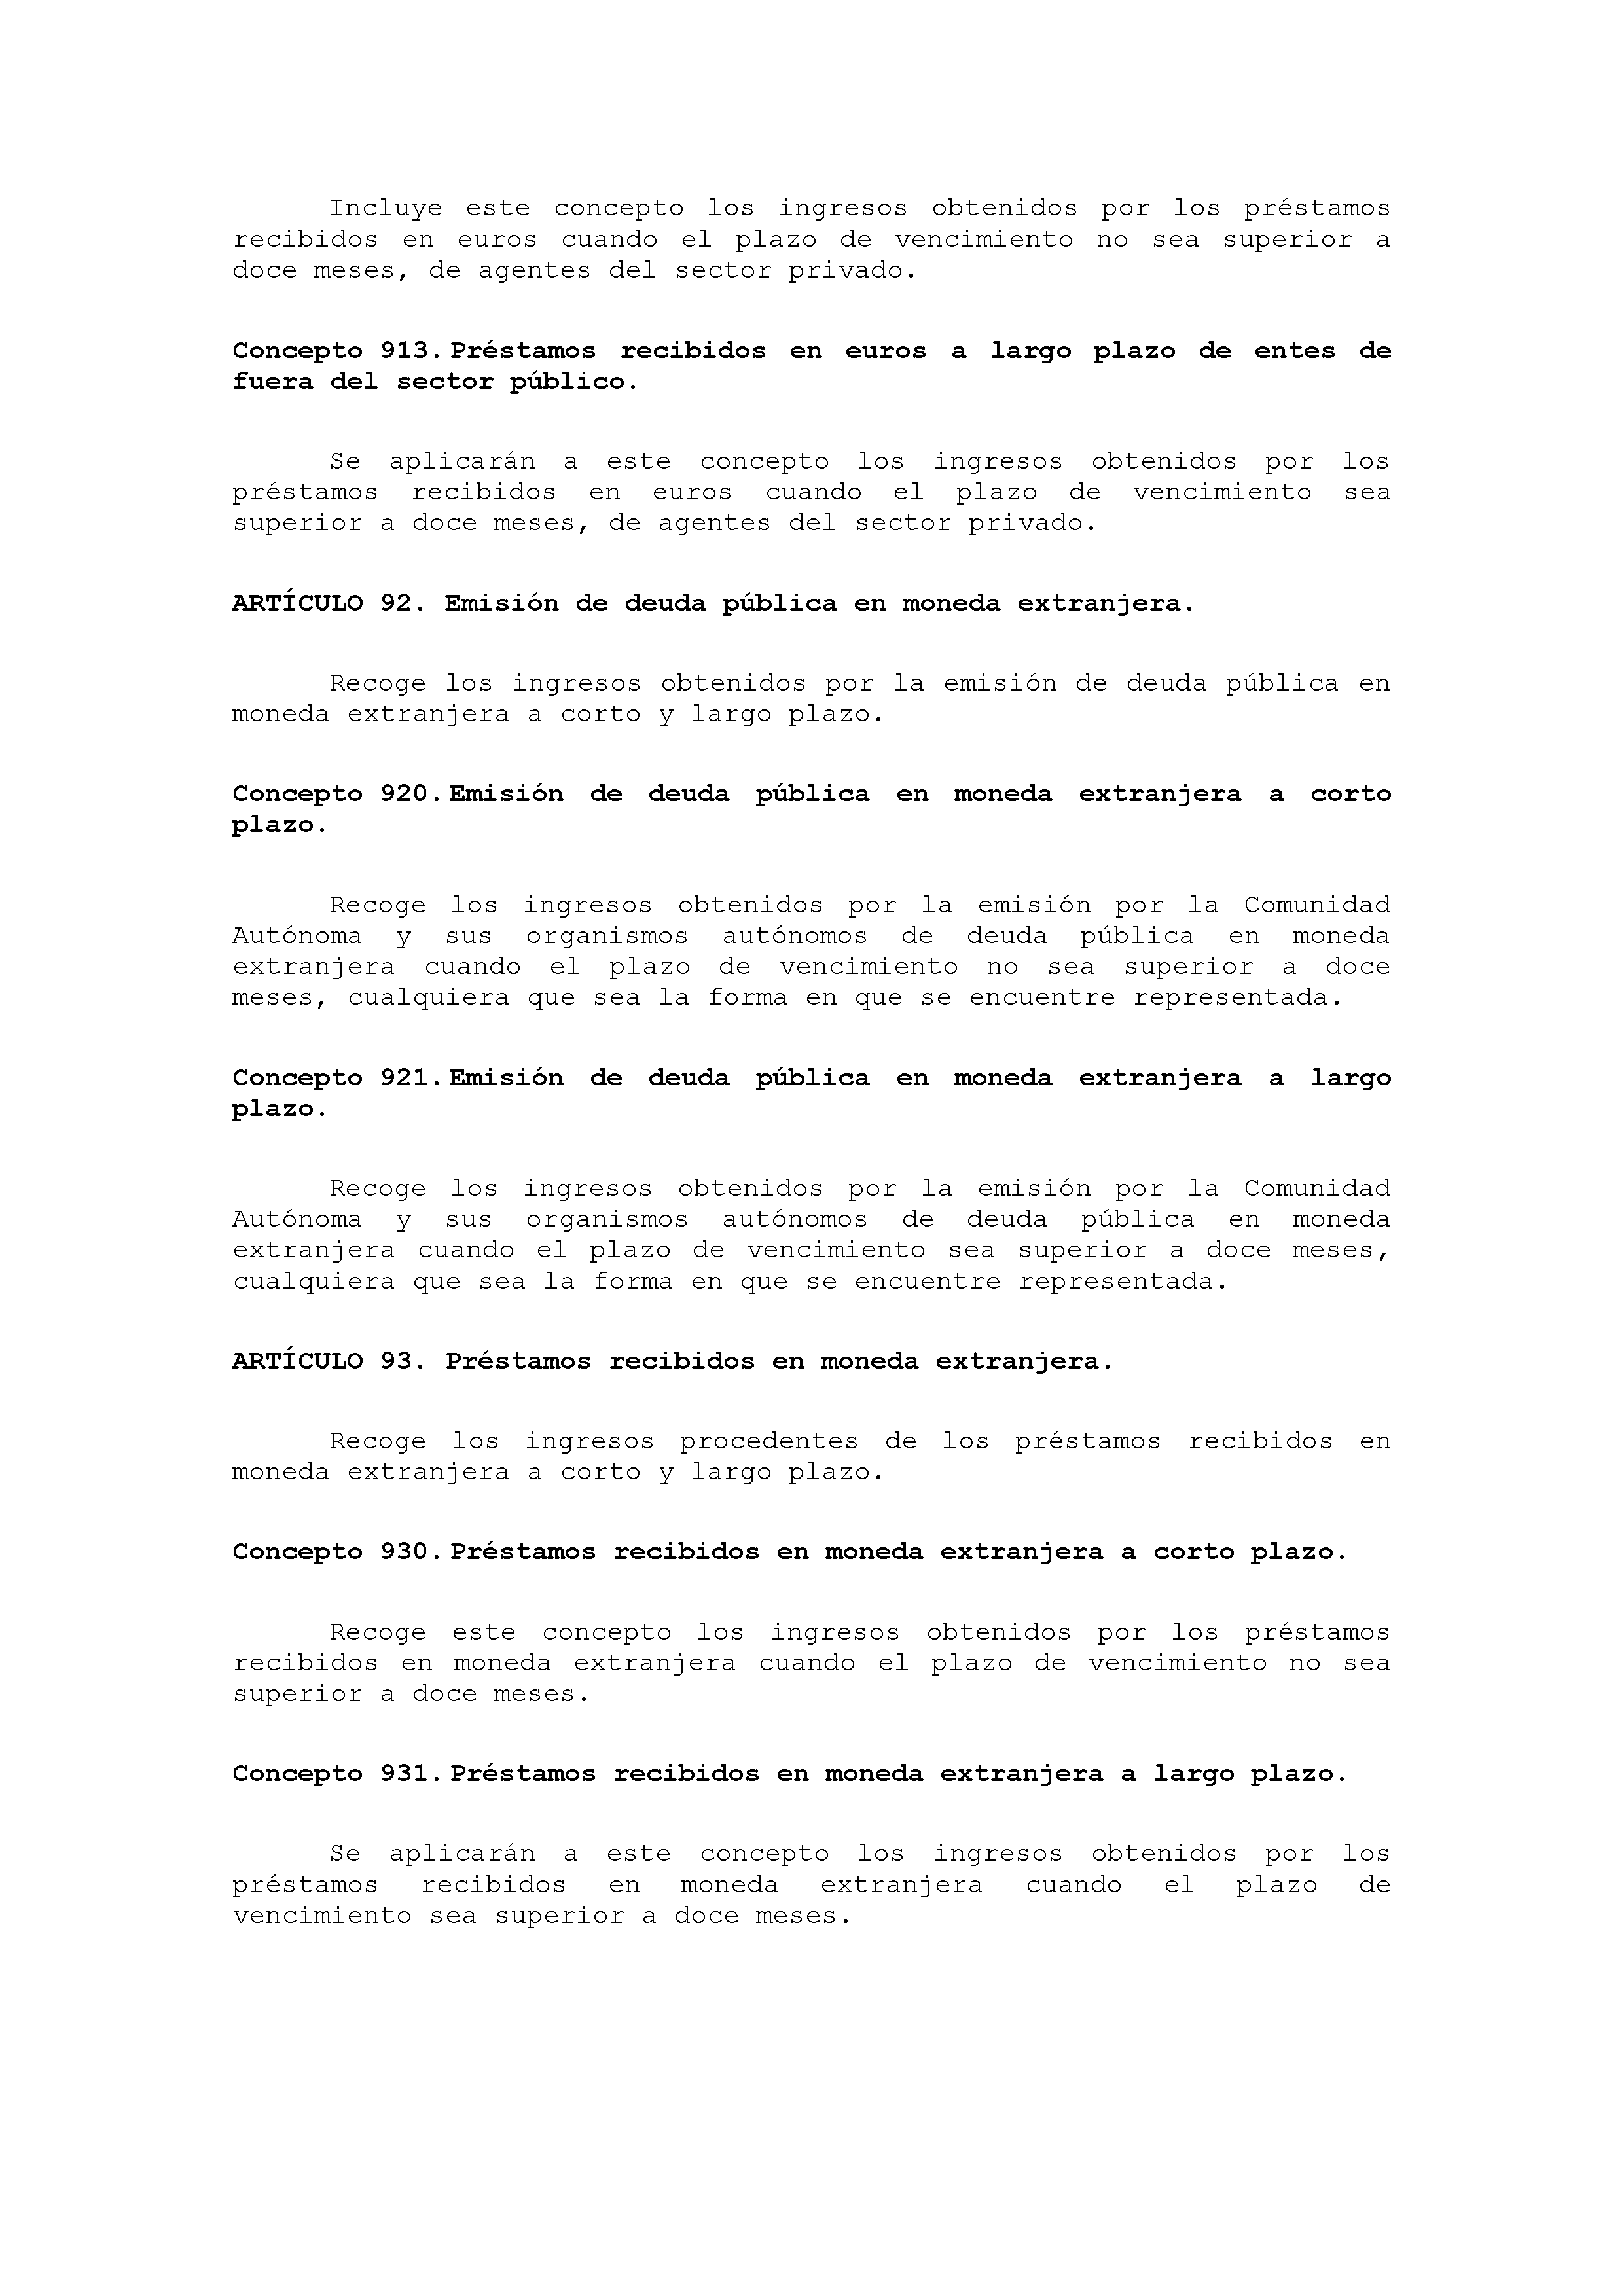 ANEXO VIII CÓDIGO DE LA CLASIFICACIÓN ECONÓMICA DE LOS INGRESOS PÚBLICOS Pag 27